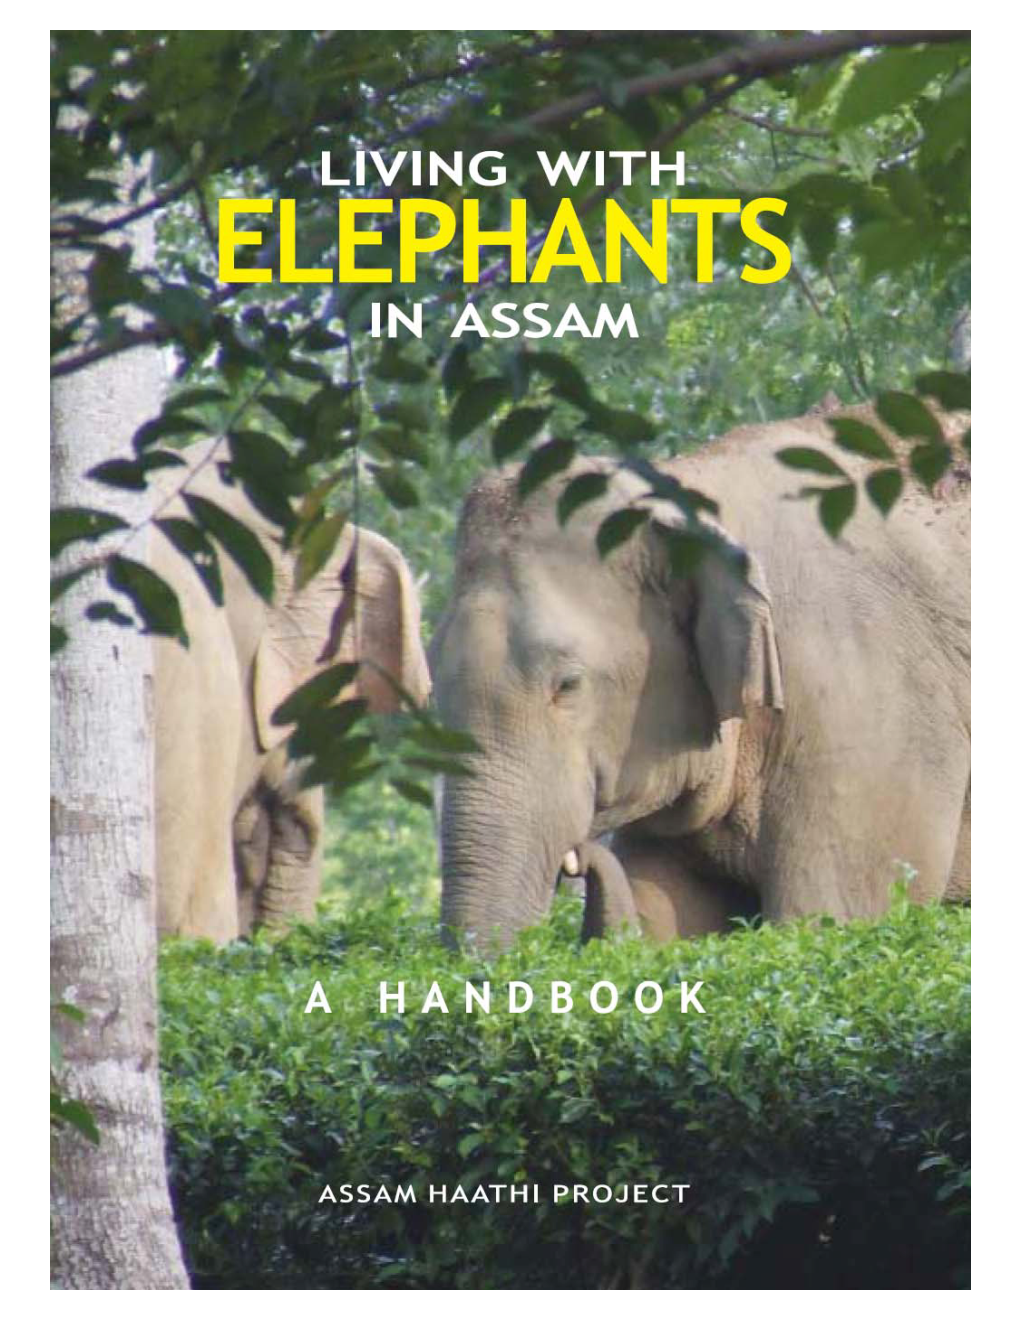 Elephants in Assam a Handbook